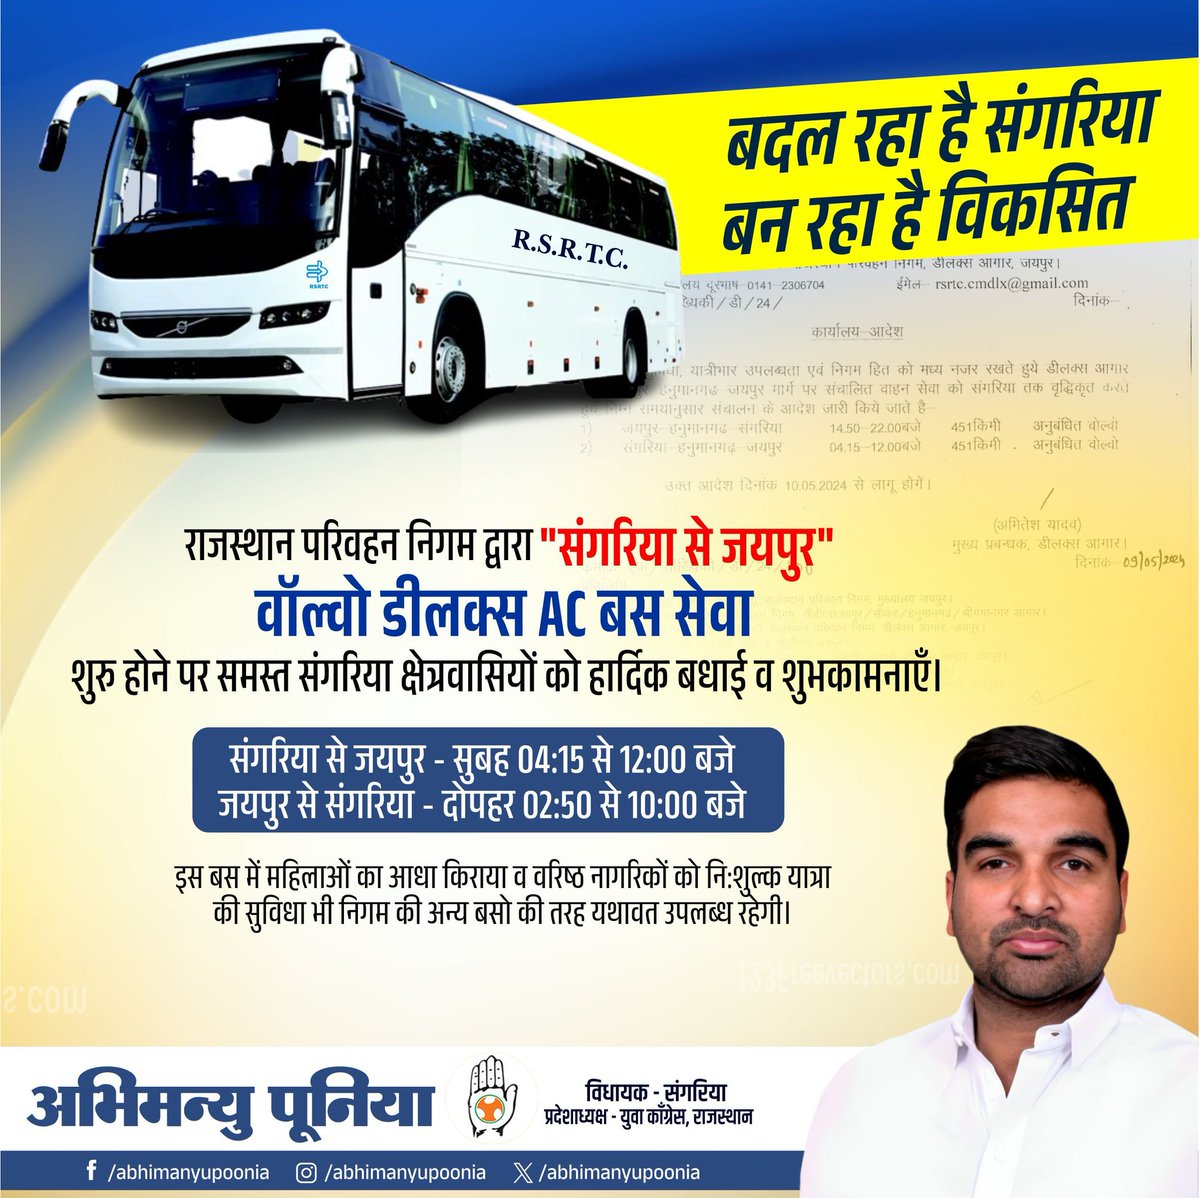 राजस्थान परिवहन निगम, जयपुर द्वारा 'संगरिया से जयपुर' वाॅल्वो डीलक्स AC बस सेवा शुरु होने पर समस्त संगरिया क्षेत्रवासियों को बधाई व शुभकामनाएँ। क्षेत्र की प्रगति के लिऐ निरंतर प्रयास जारी रहेंगे। @RajGovOfficial